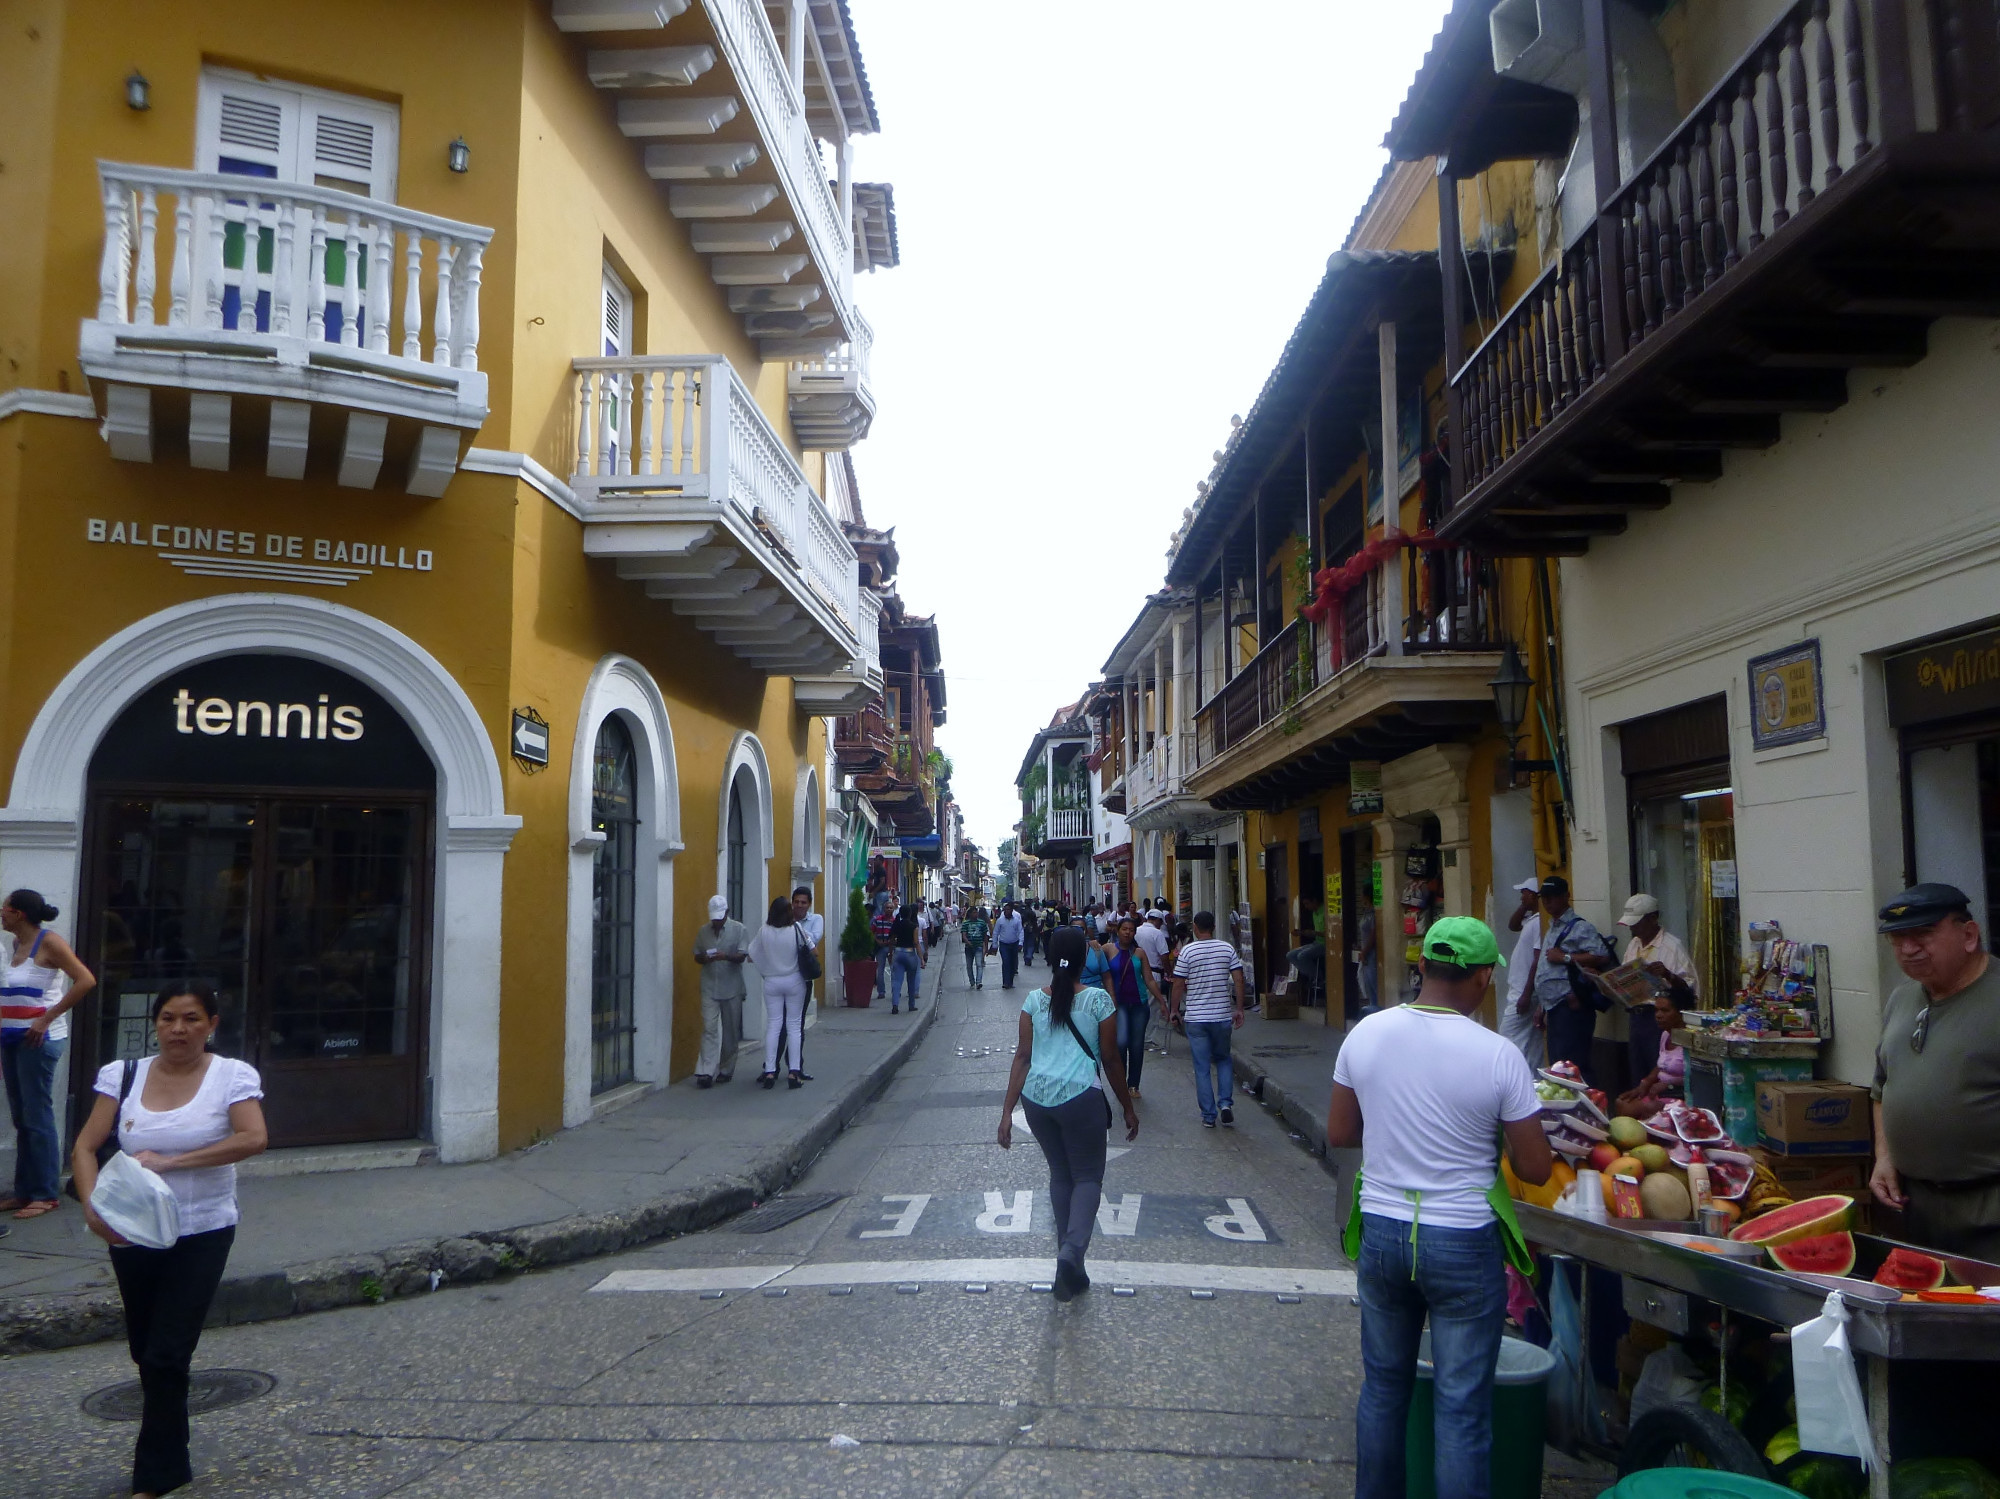 Картахена, Колумбия